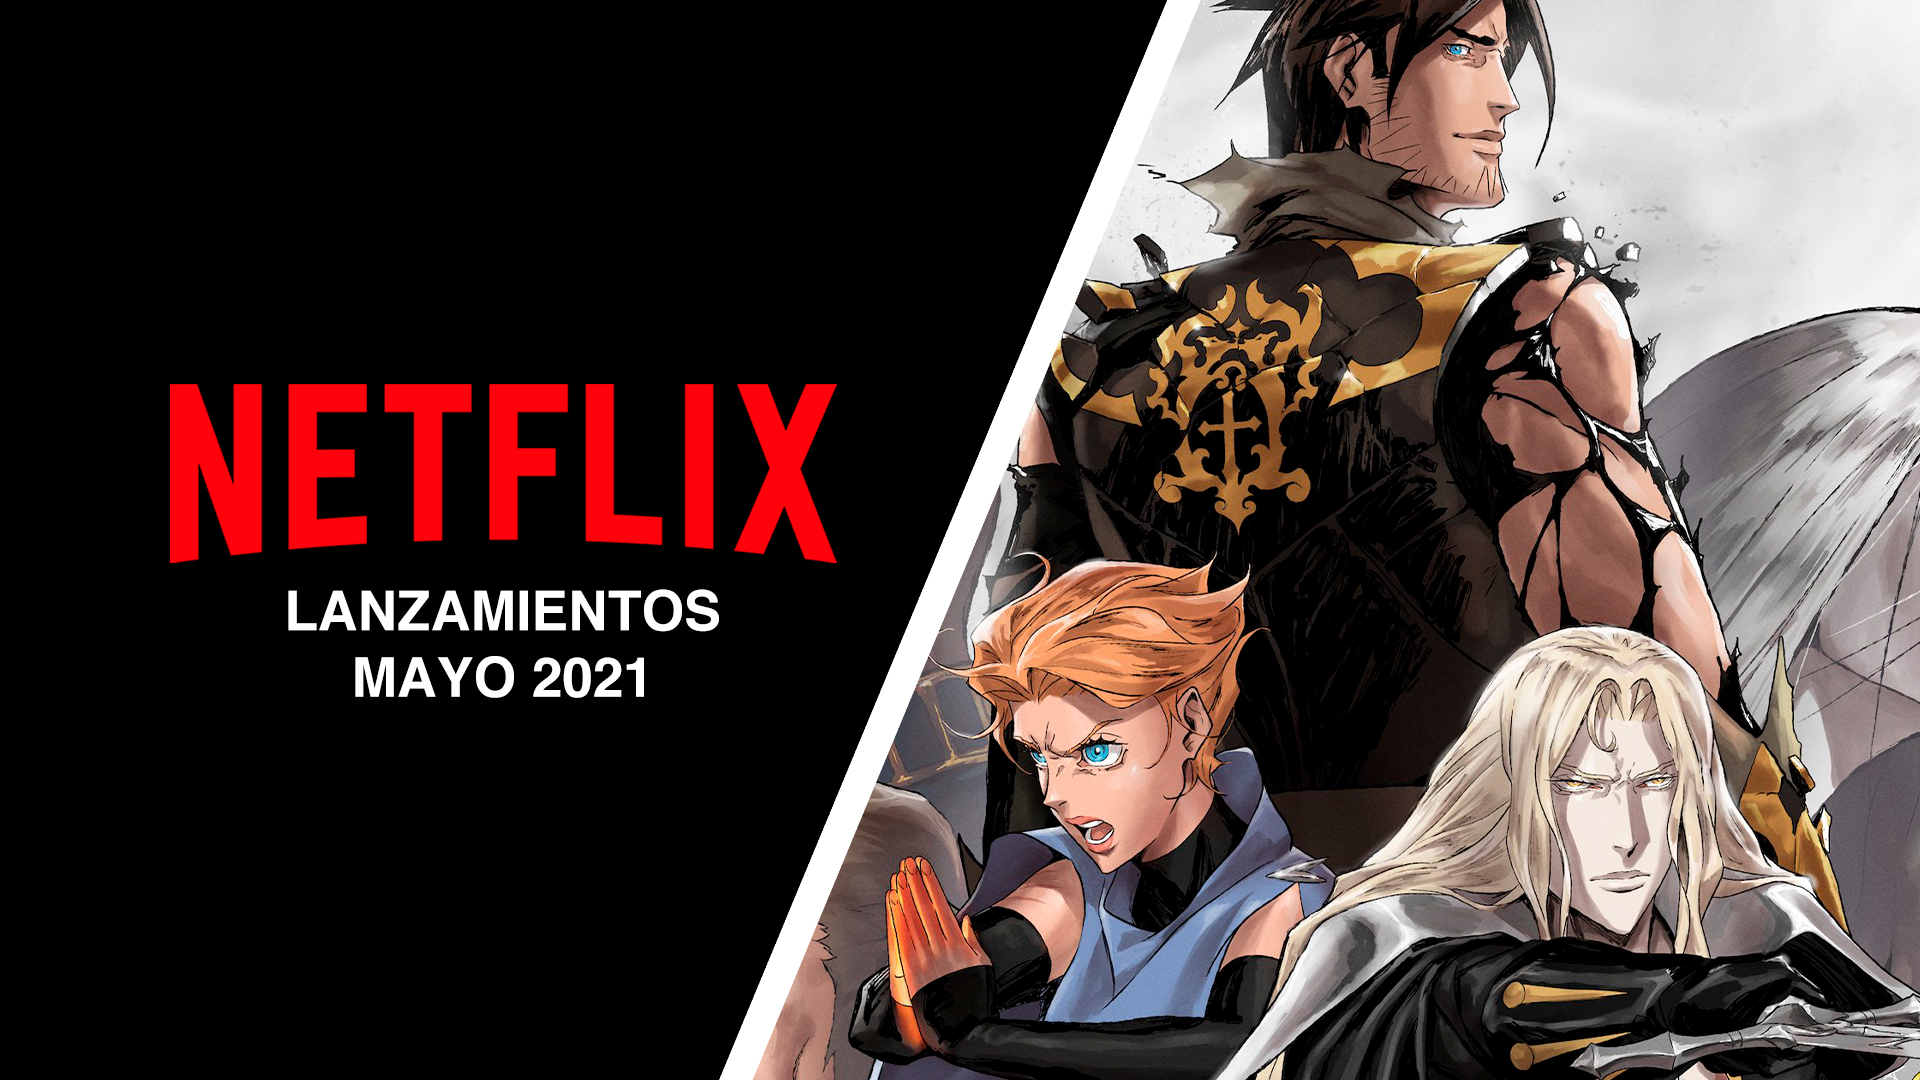 Lanzamientos Netflix mayo 2021